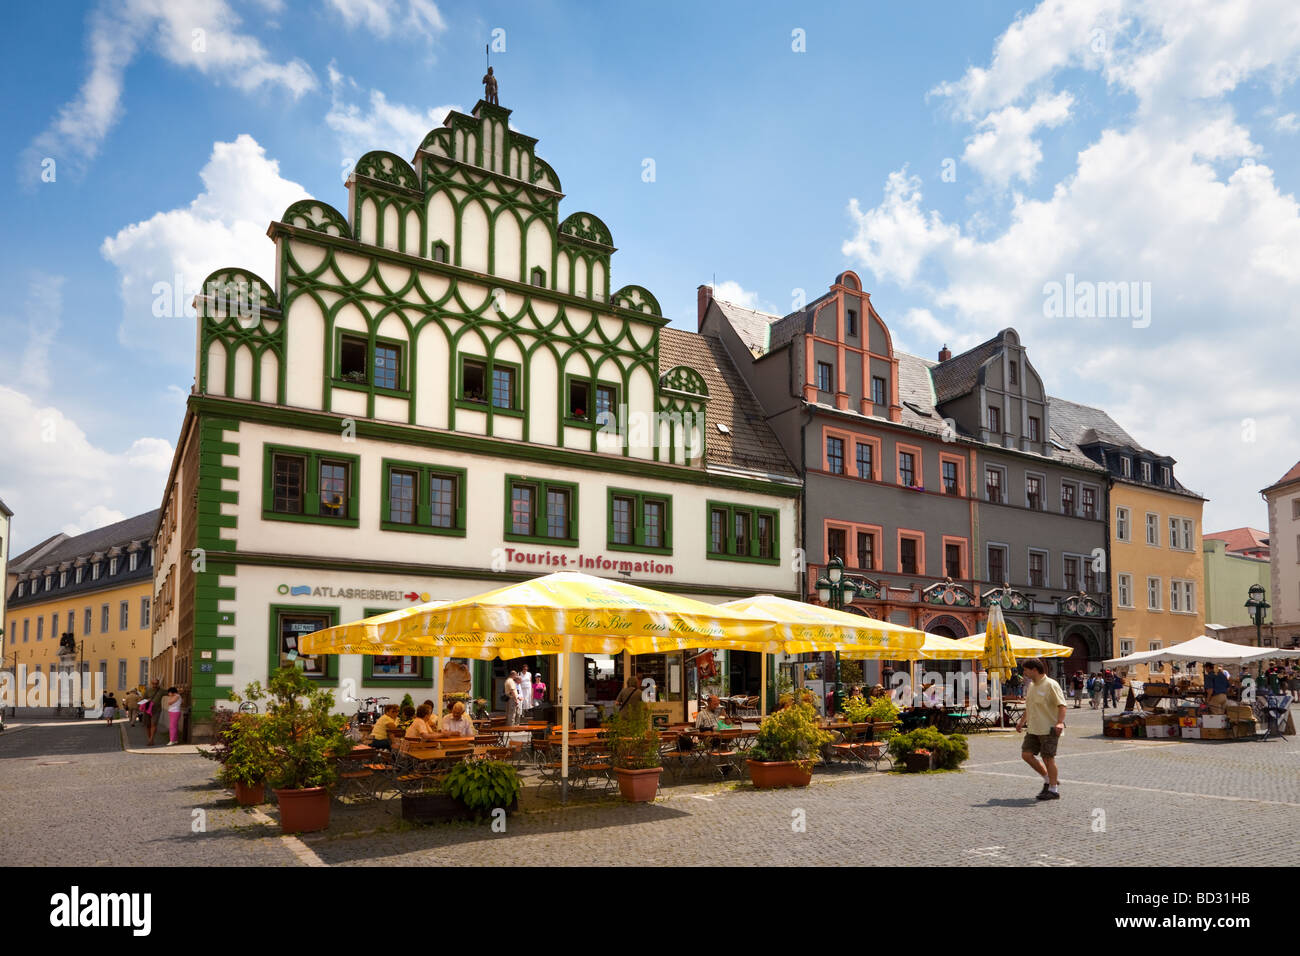 Place du marché, Weimar, Allemagne, Europe - bureau d'information touristique et Lucas Cranach Maison avec café en face de la chaussée Banque D'Images